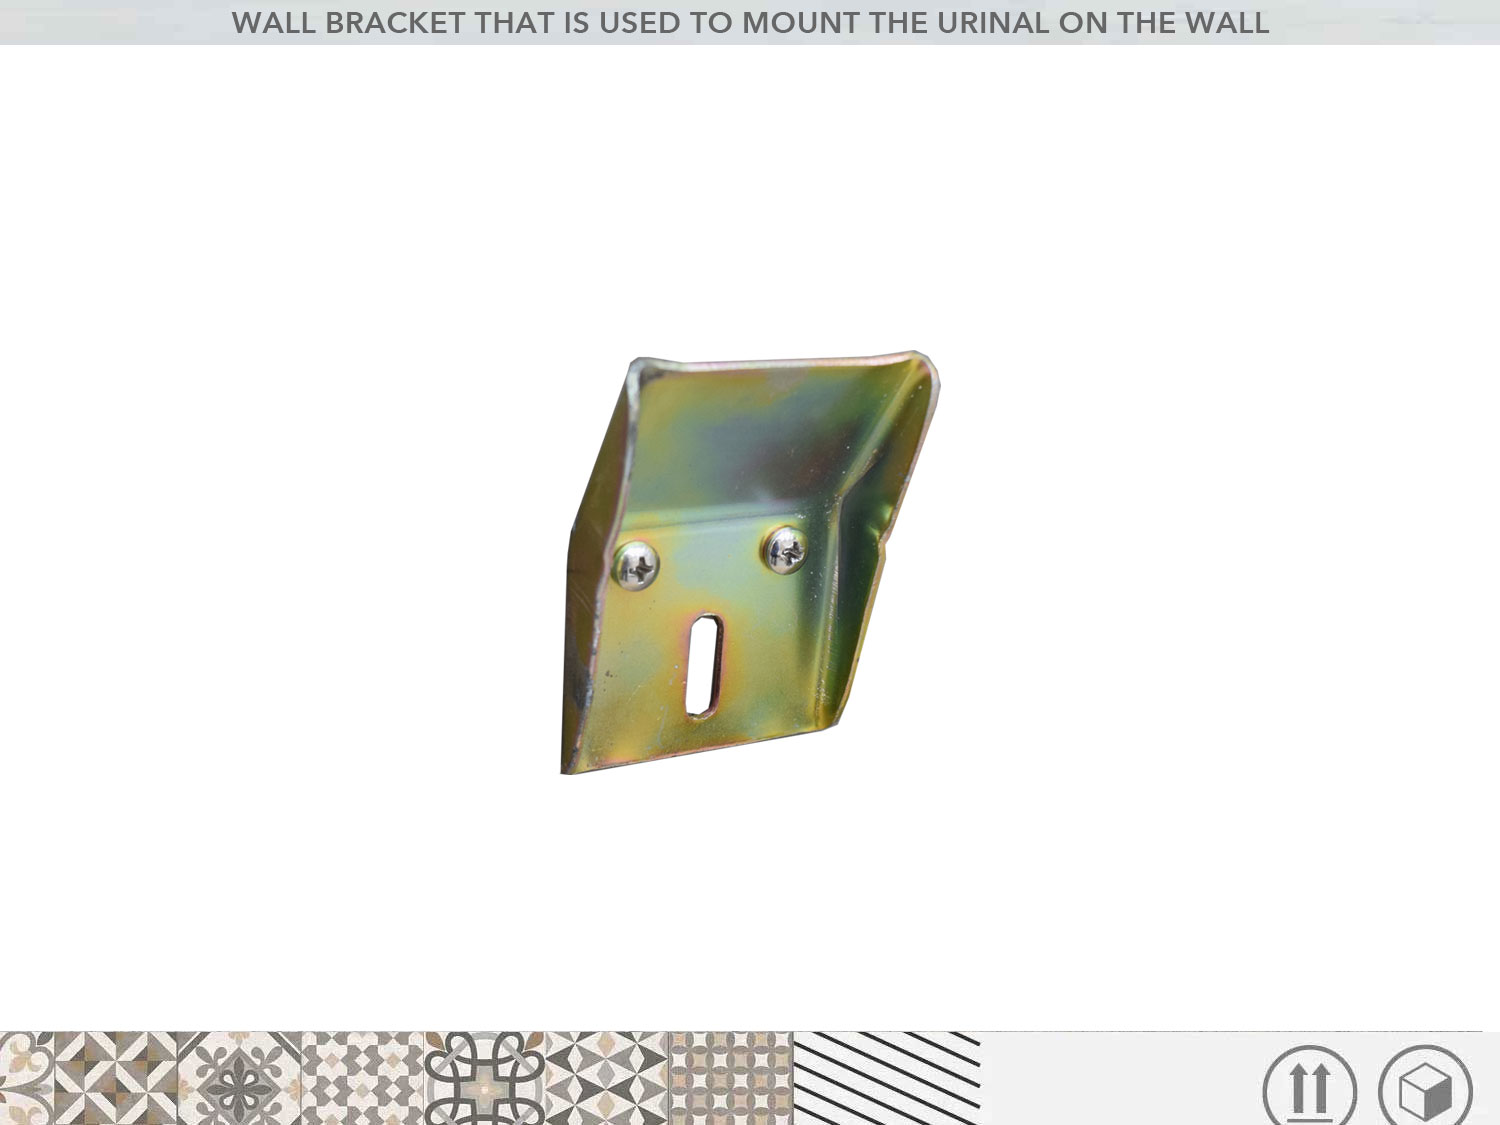 Wall mount bracket